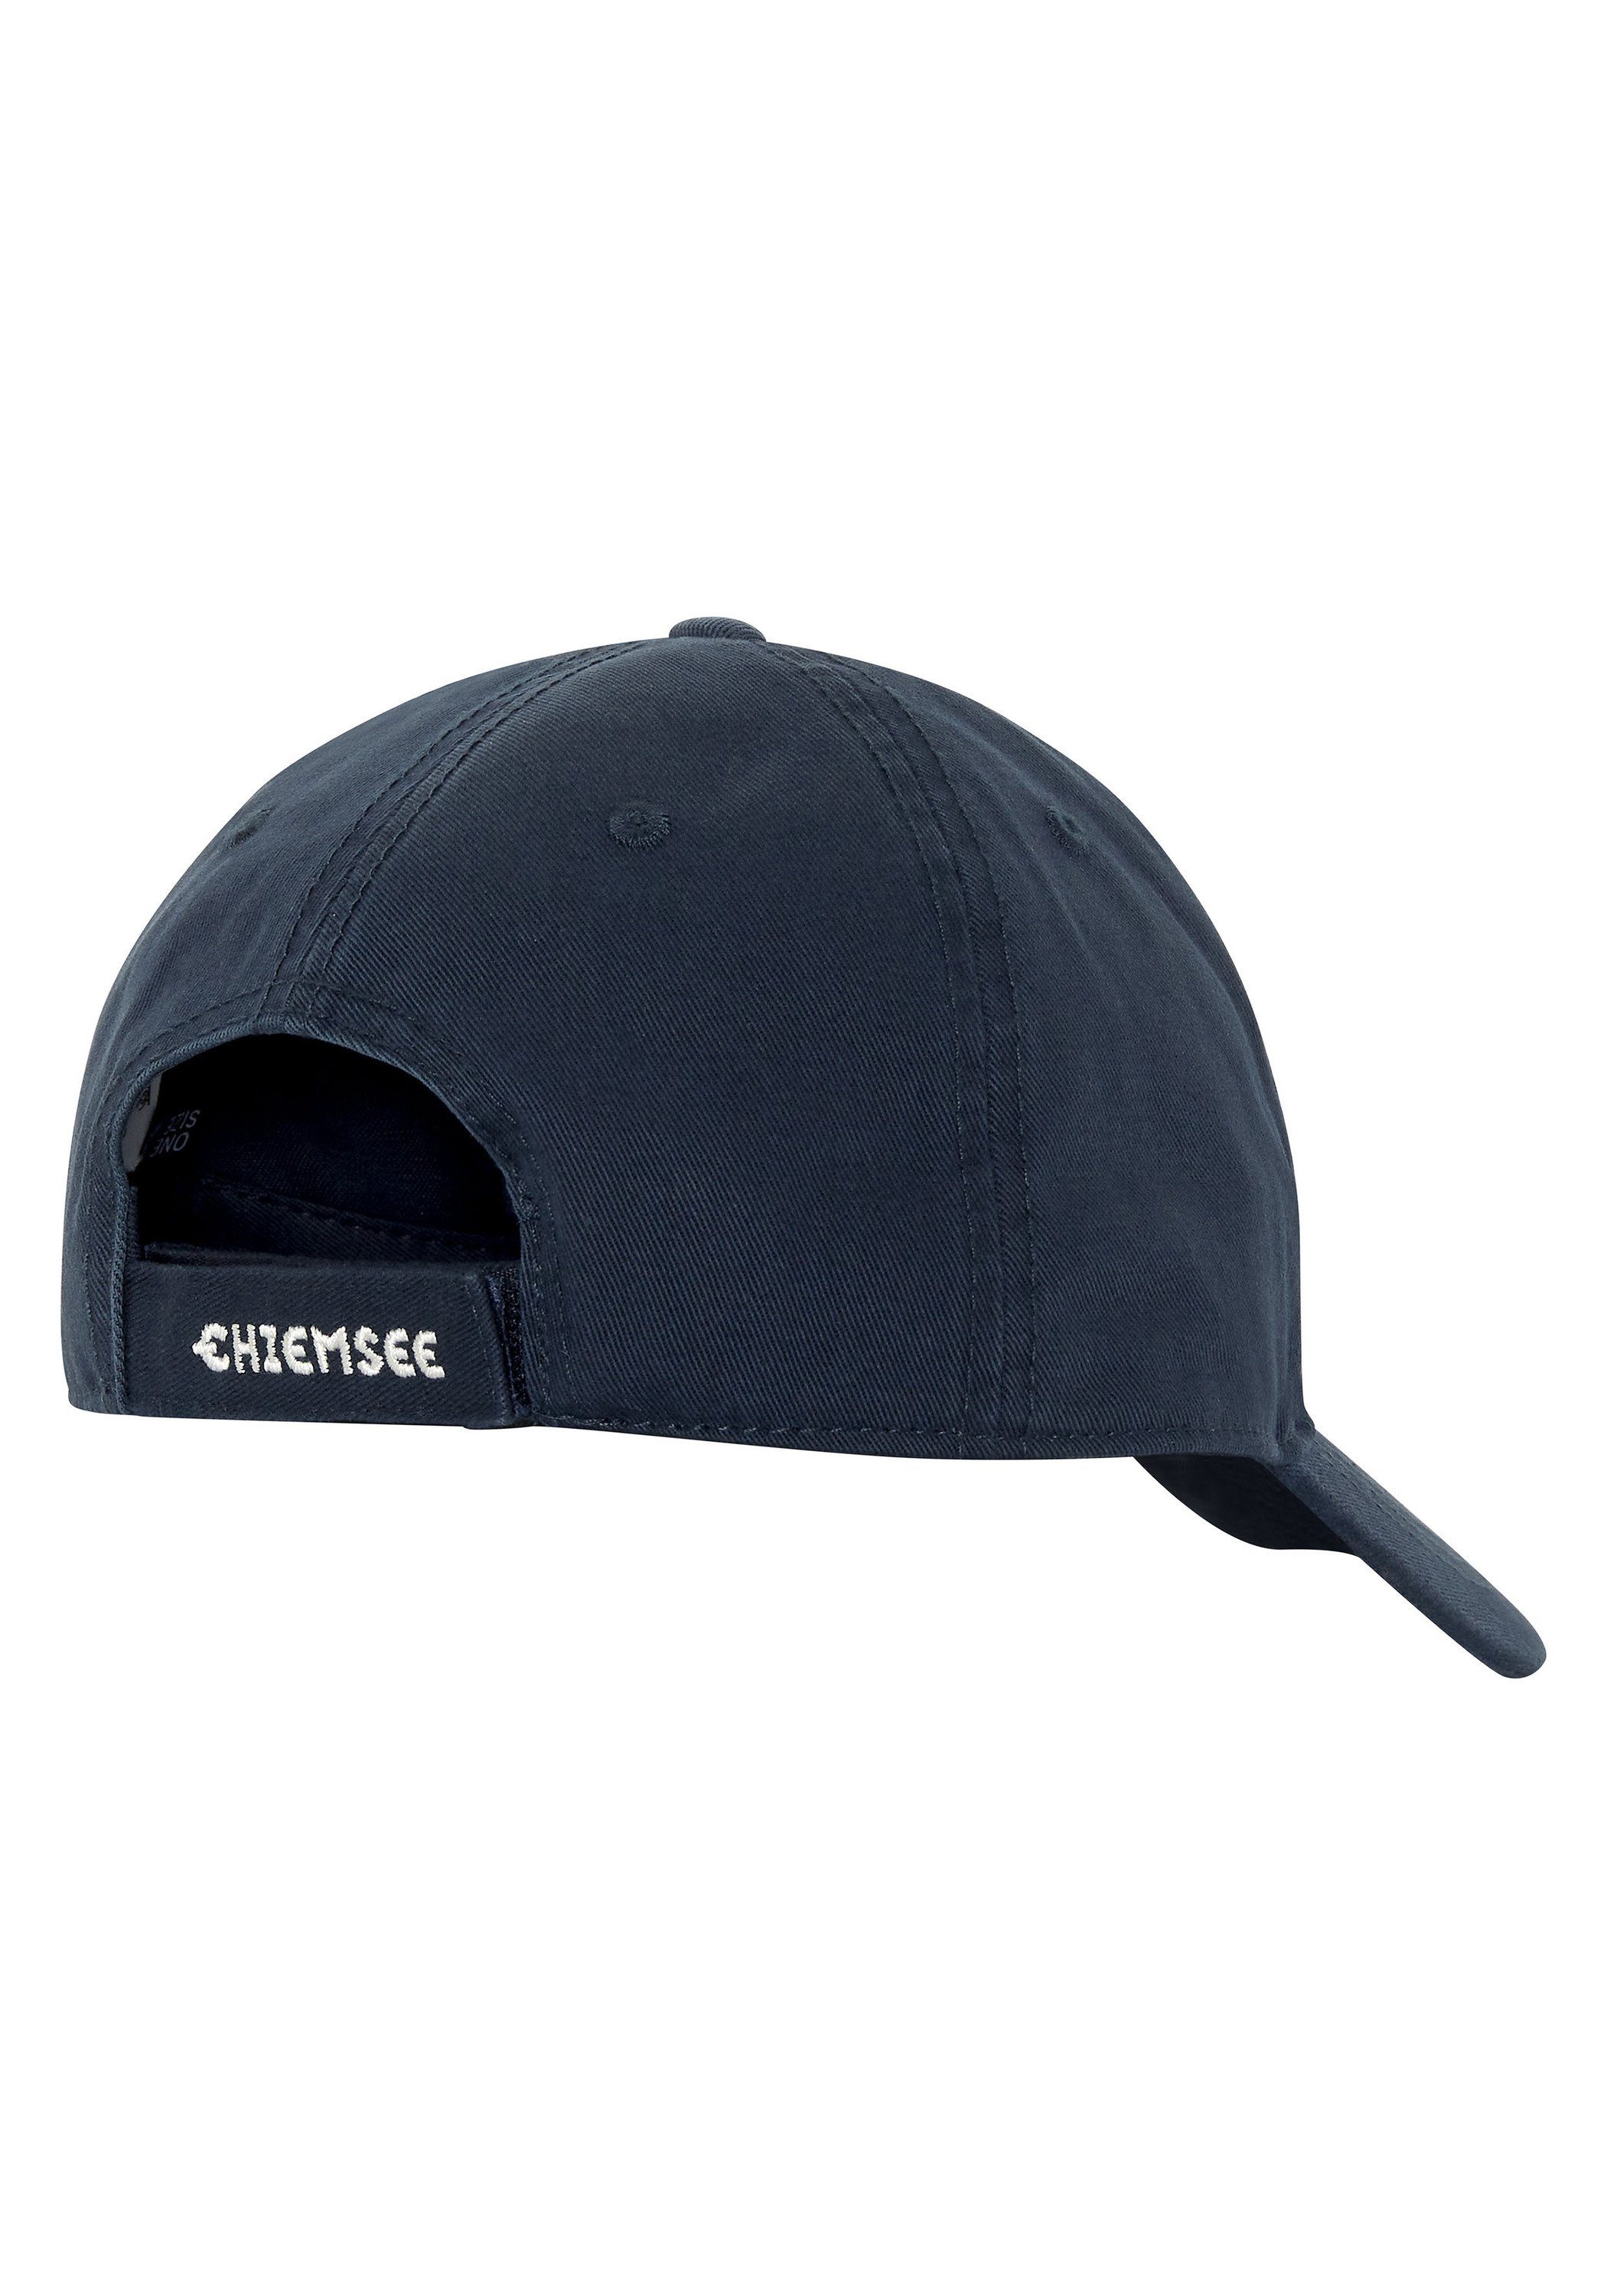 Cap Logo 1 aus Unisex Chiemsee Cap blau Baseball mit Baumwolle dunkel